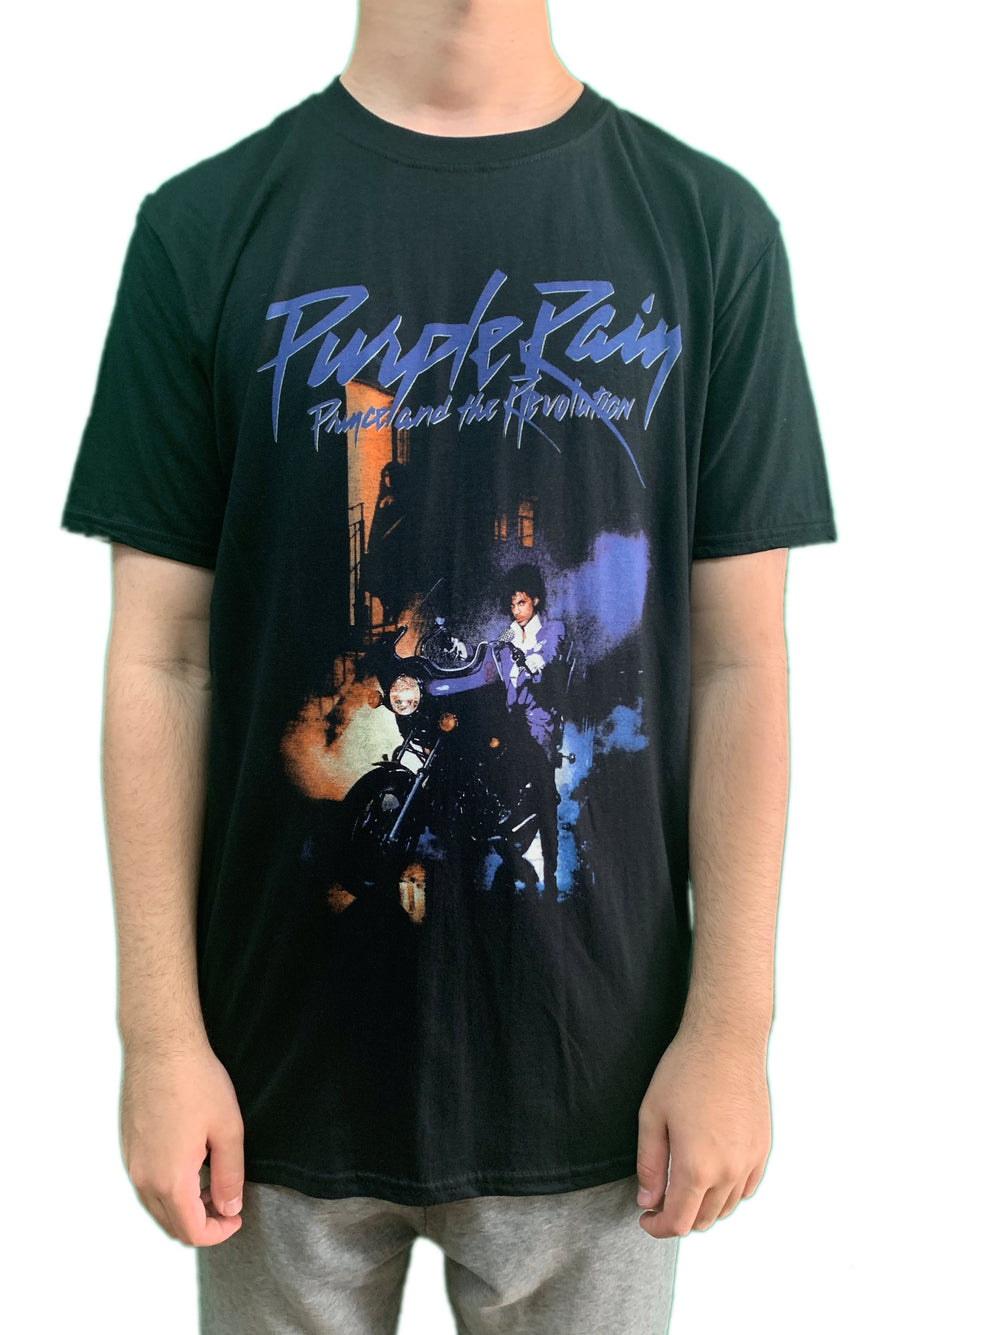 Prince – Purple Rain Unisex Official T-Shirt Brand New Various PLUS Sizes